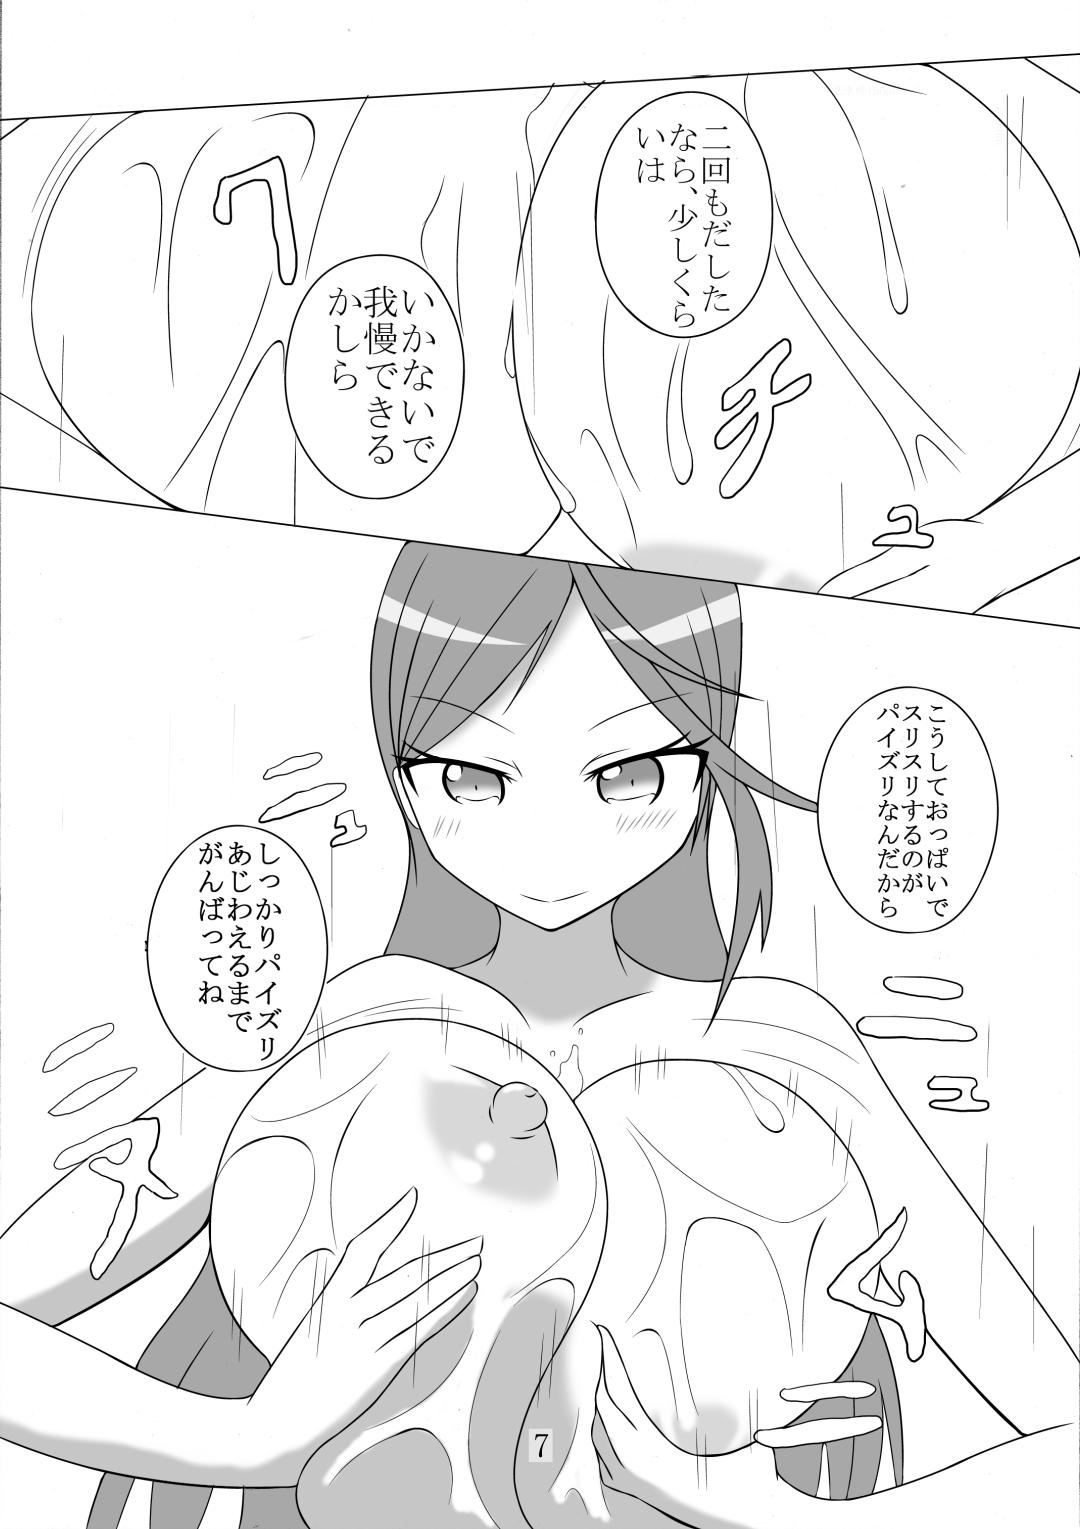 Pregnant Paizuri Manga Shuu - Dungeon ni deai o motomeru no wa machigatteiru darou ka Shokugeki no soma Triage x Mommy - Page 7